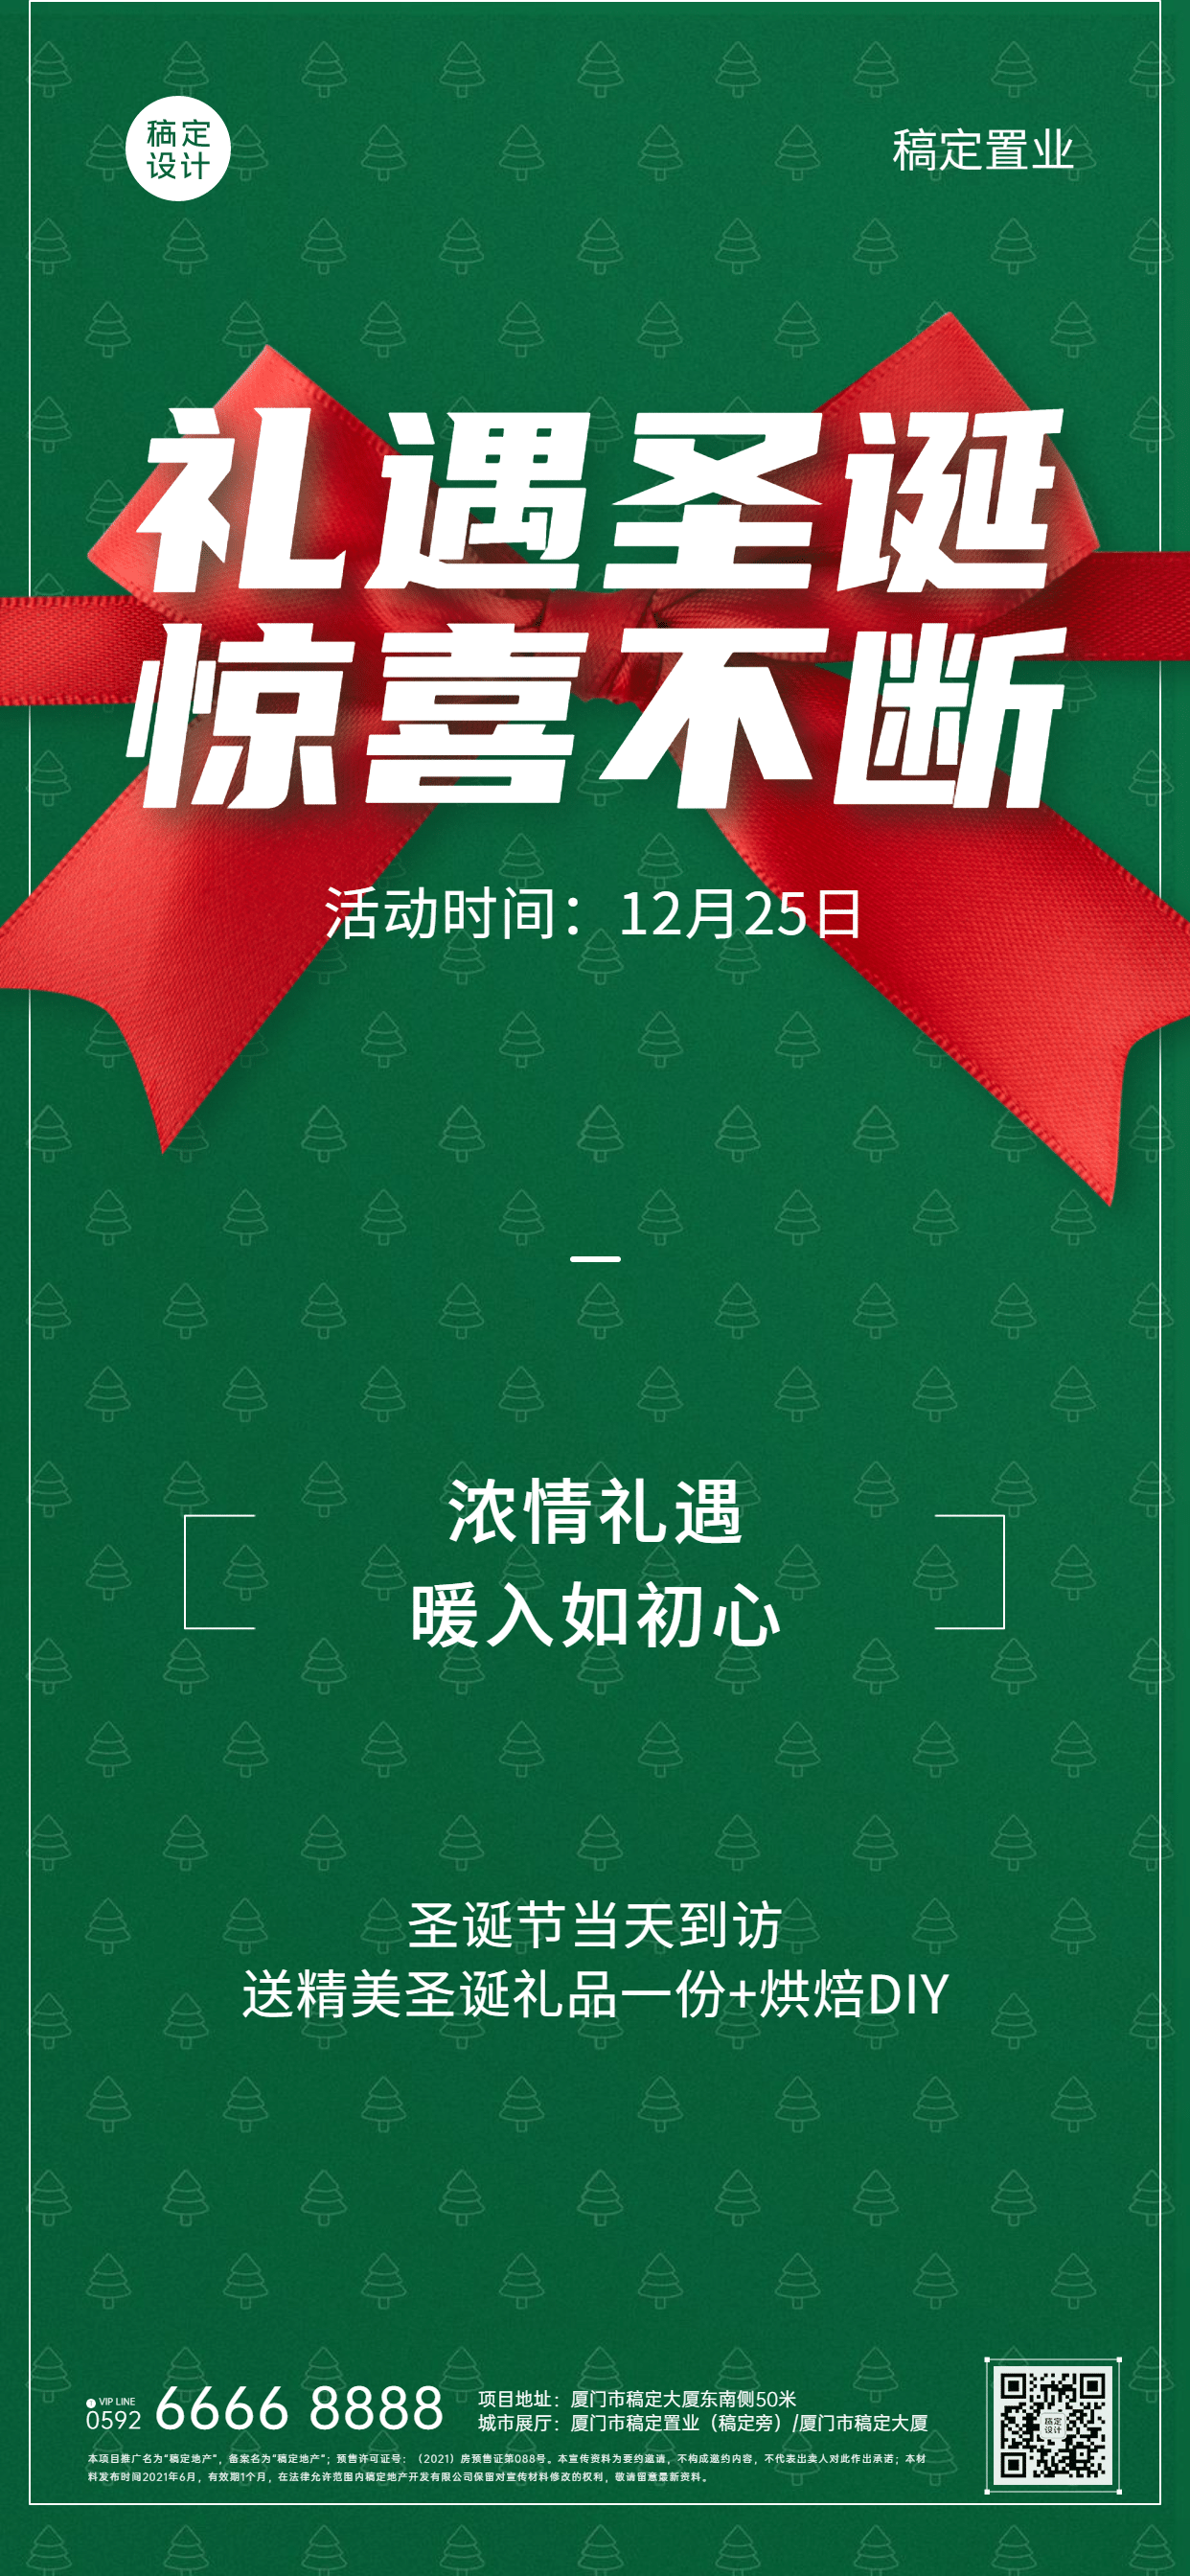 圣诞节房地产活动宣传蝴蝶结海报